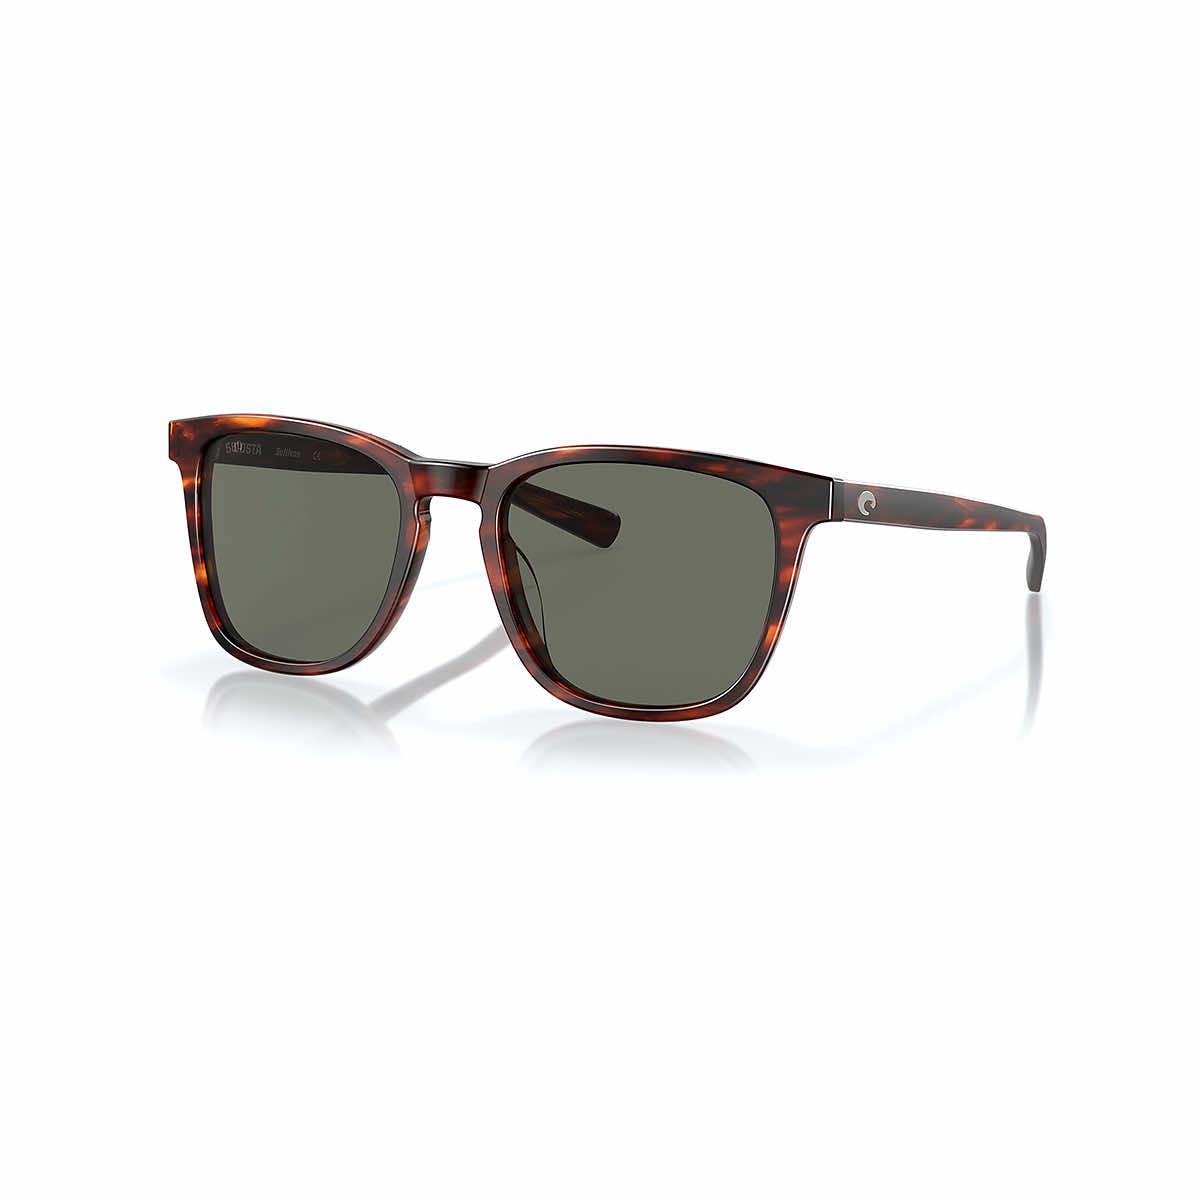  Sullivan 580g Sunglasses - Polarized